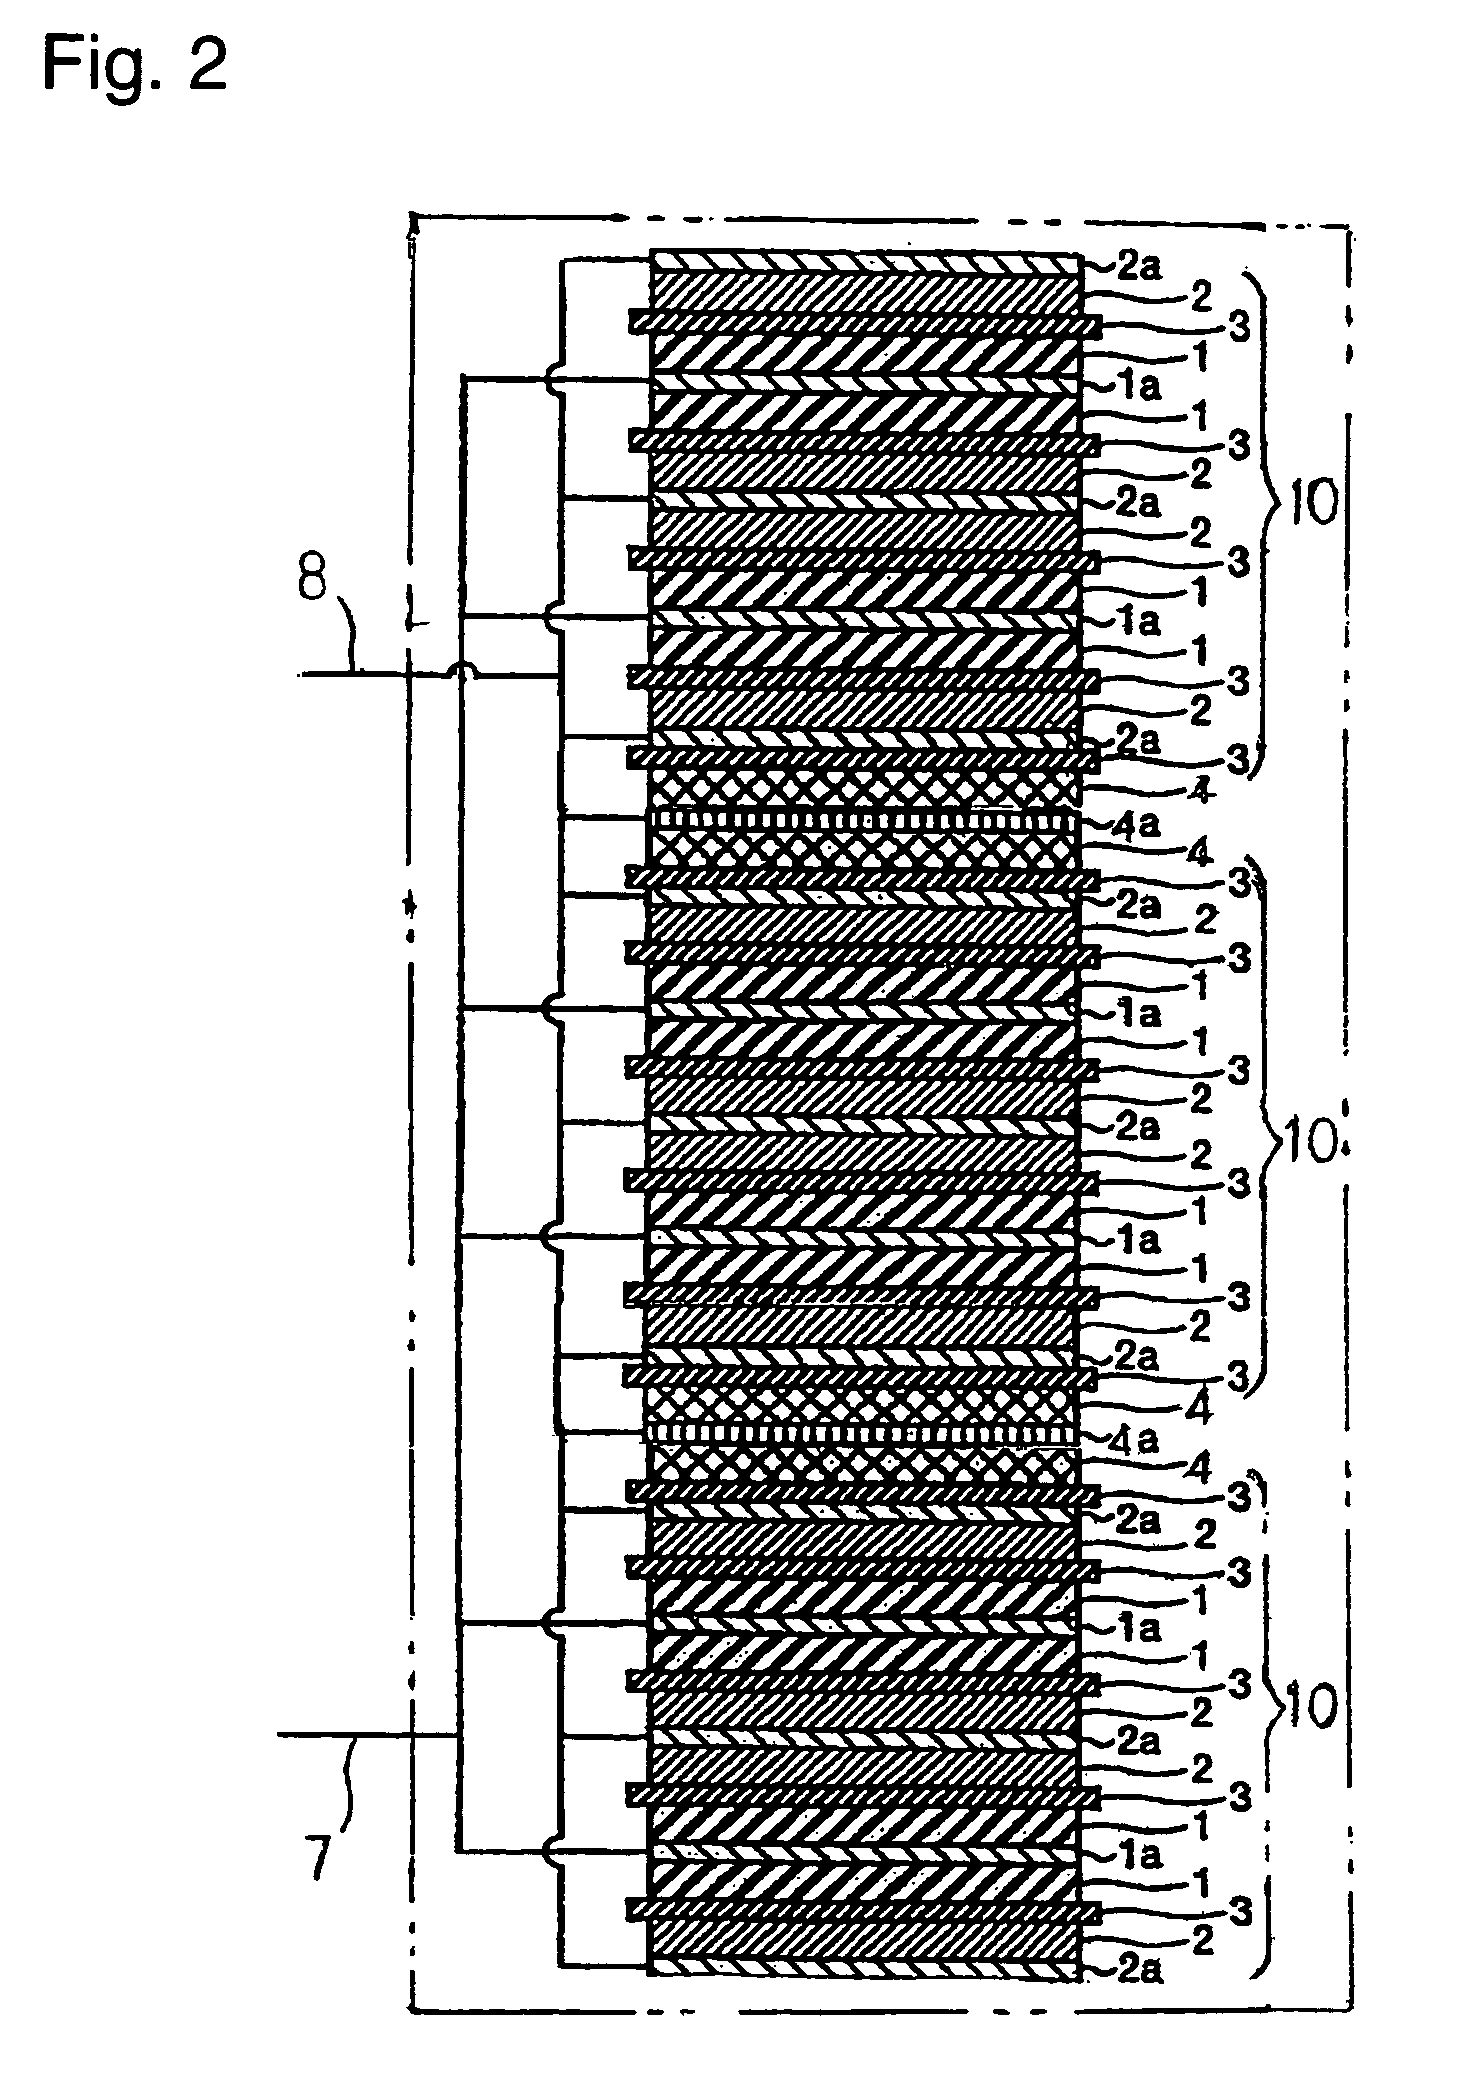 Lithium ion capacitor